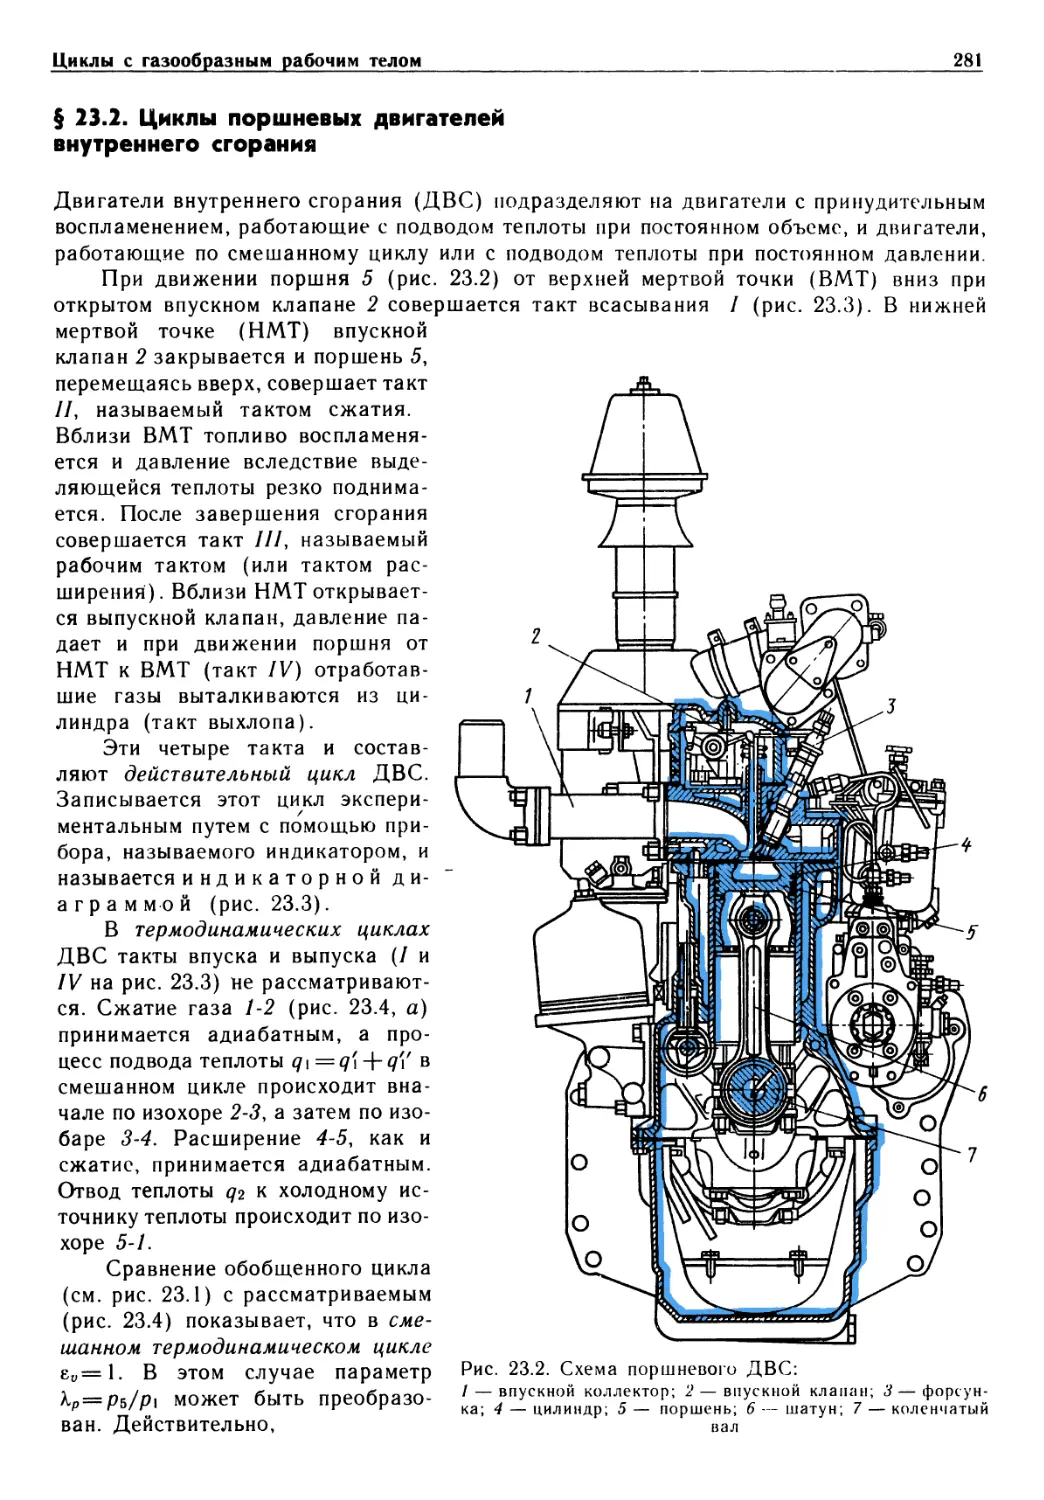 § 23.2. Циклы поршневых двигателей внутреннего сгорания